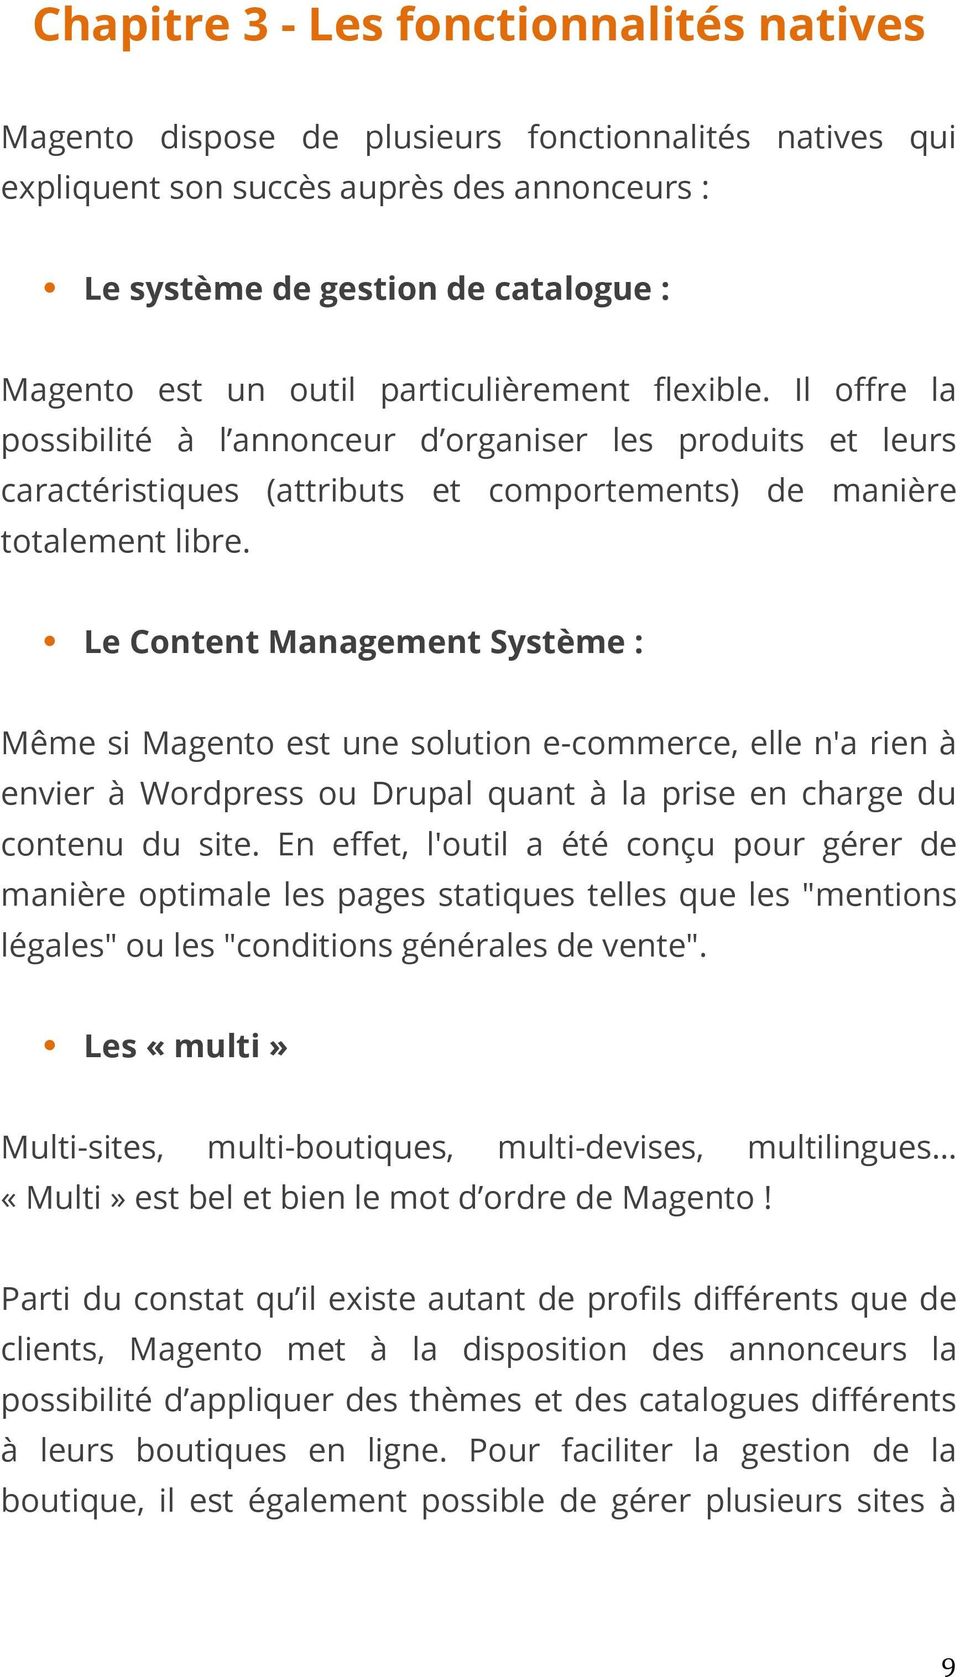 Le Content Management Système : Même si Magento est une solution e-commerce, elle n'a rien à envier à Wordpress ou Drupal quant à la prise en charge du contenu du site.